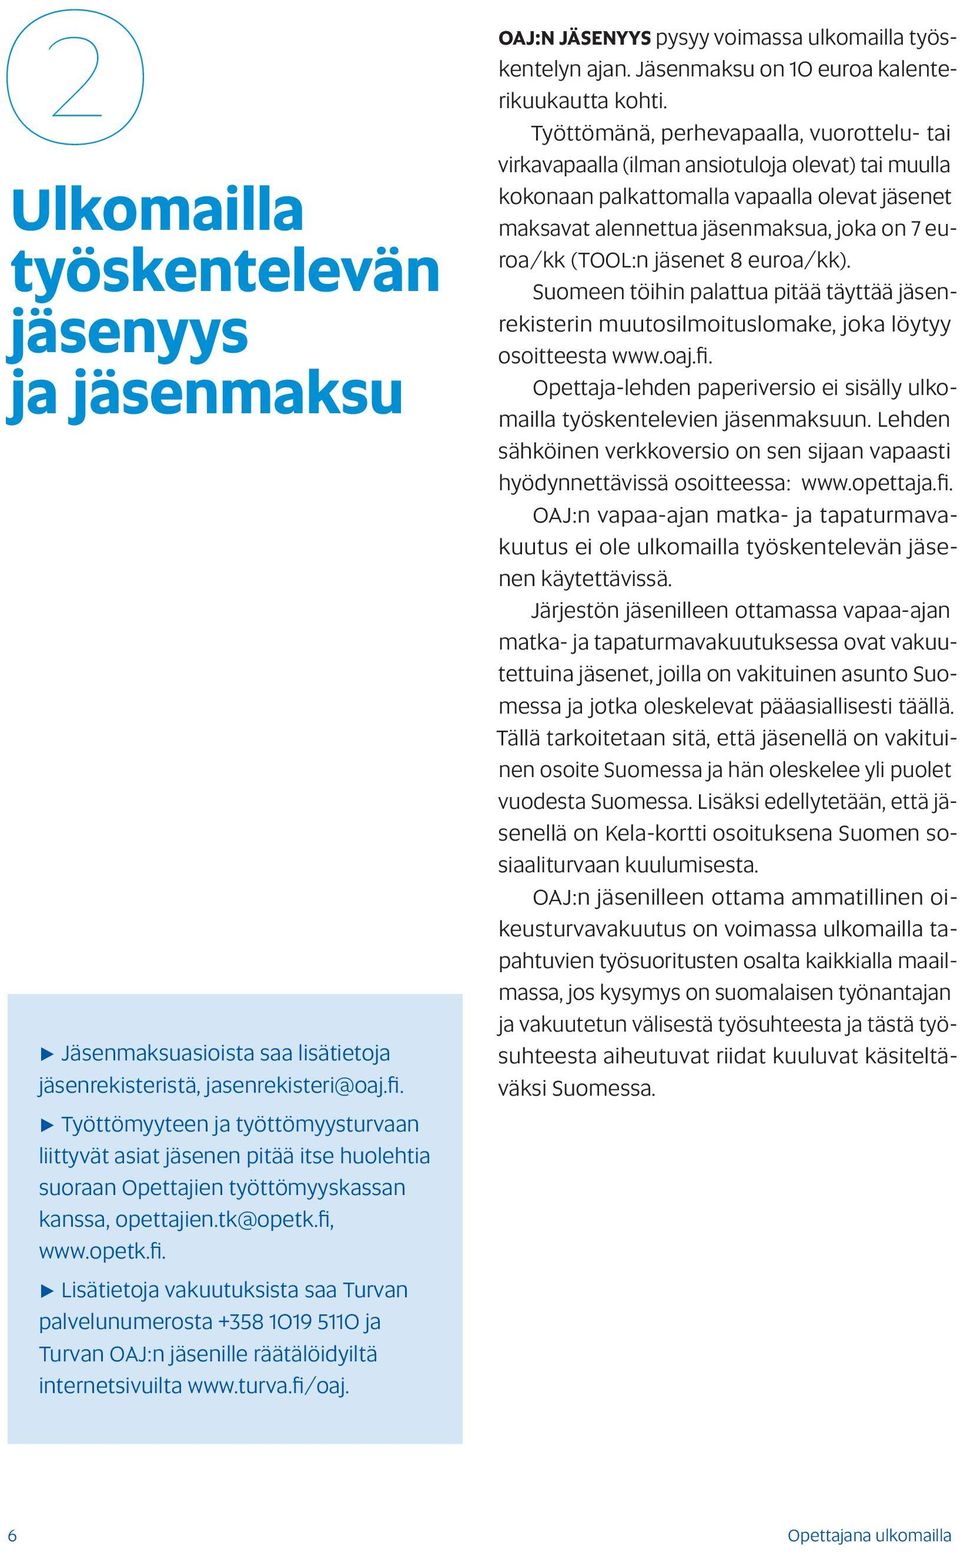 www.opetk.fi. Lisätietoja vakuutuksista saa Turvan palvelunumerosta +358 1019 5110 ja Turvan OAJ:n jäsenille räätälöidyiltä internetsivuilta www.turva.fi/oaj.